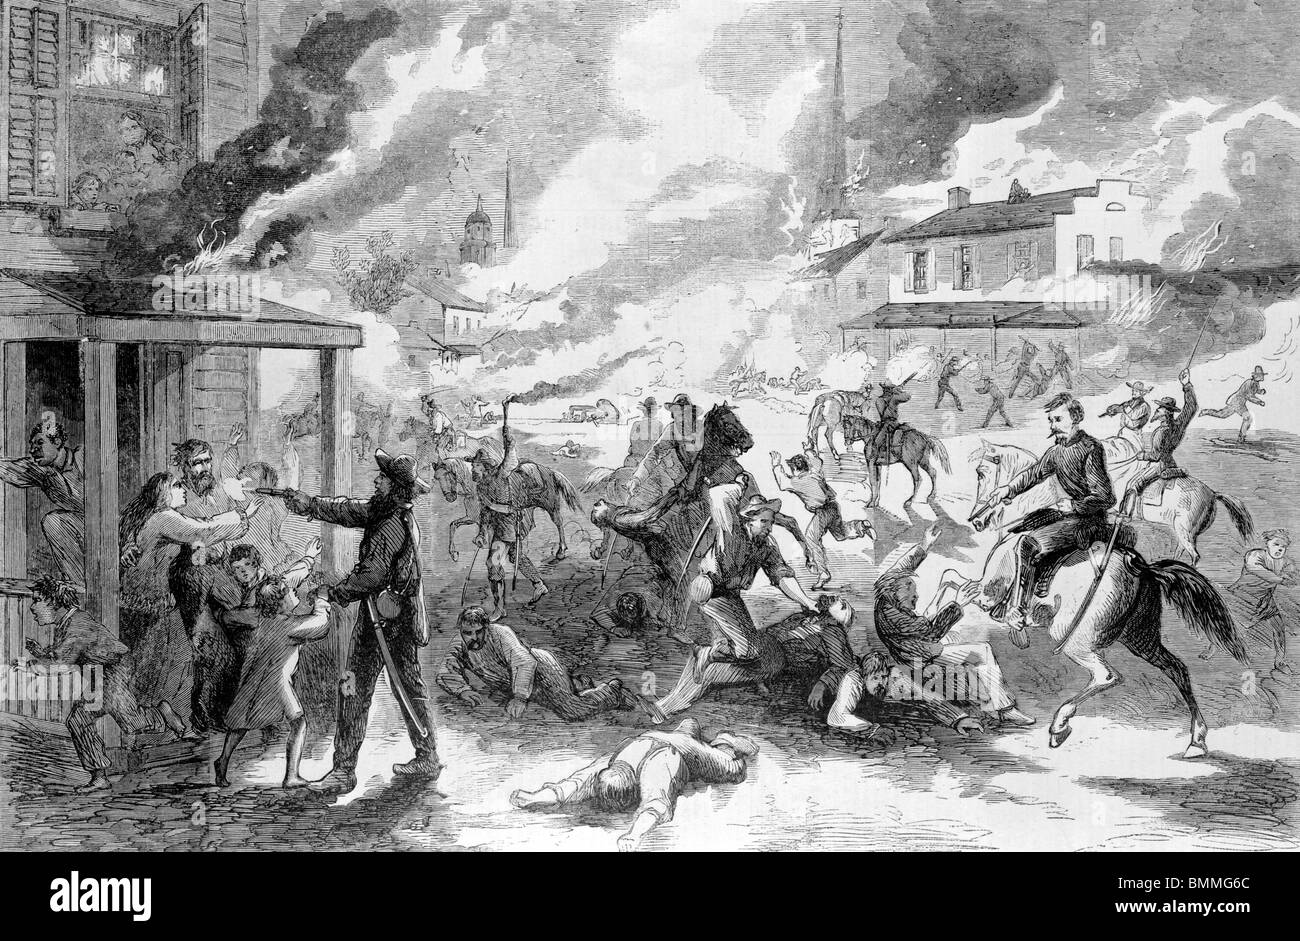 La destruction de la ville de Lawrence, Kansas, et le massacre de ses habitants par les rebelles de la guérilla, le 21 août 1863 Banque D'Images